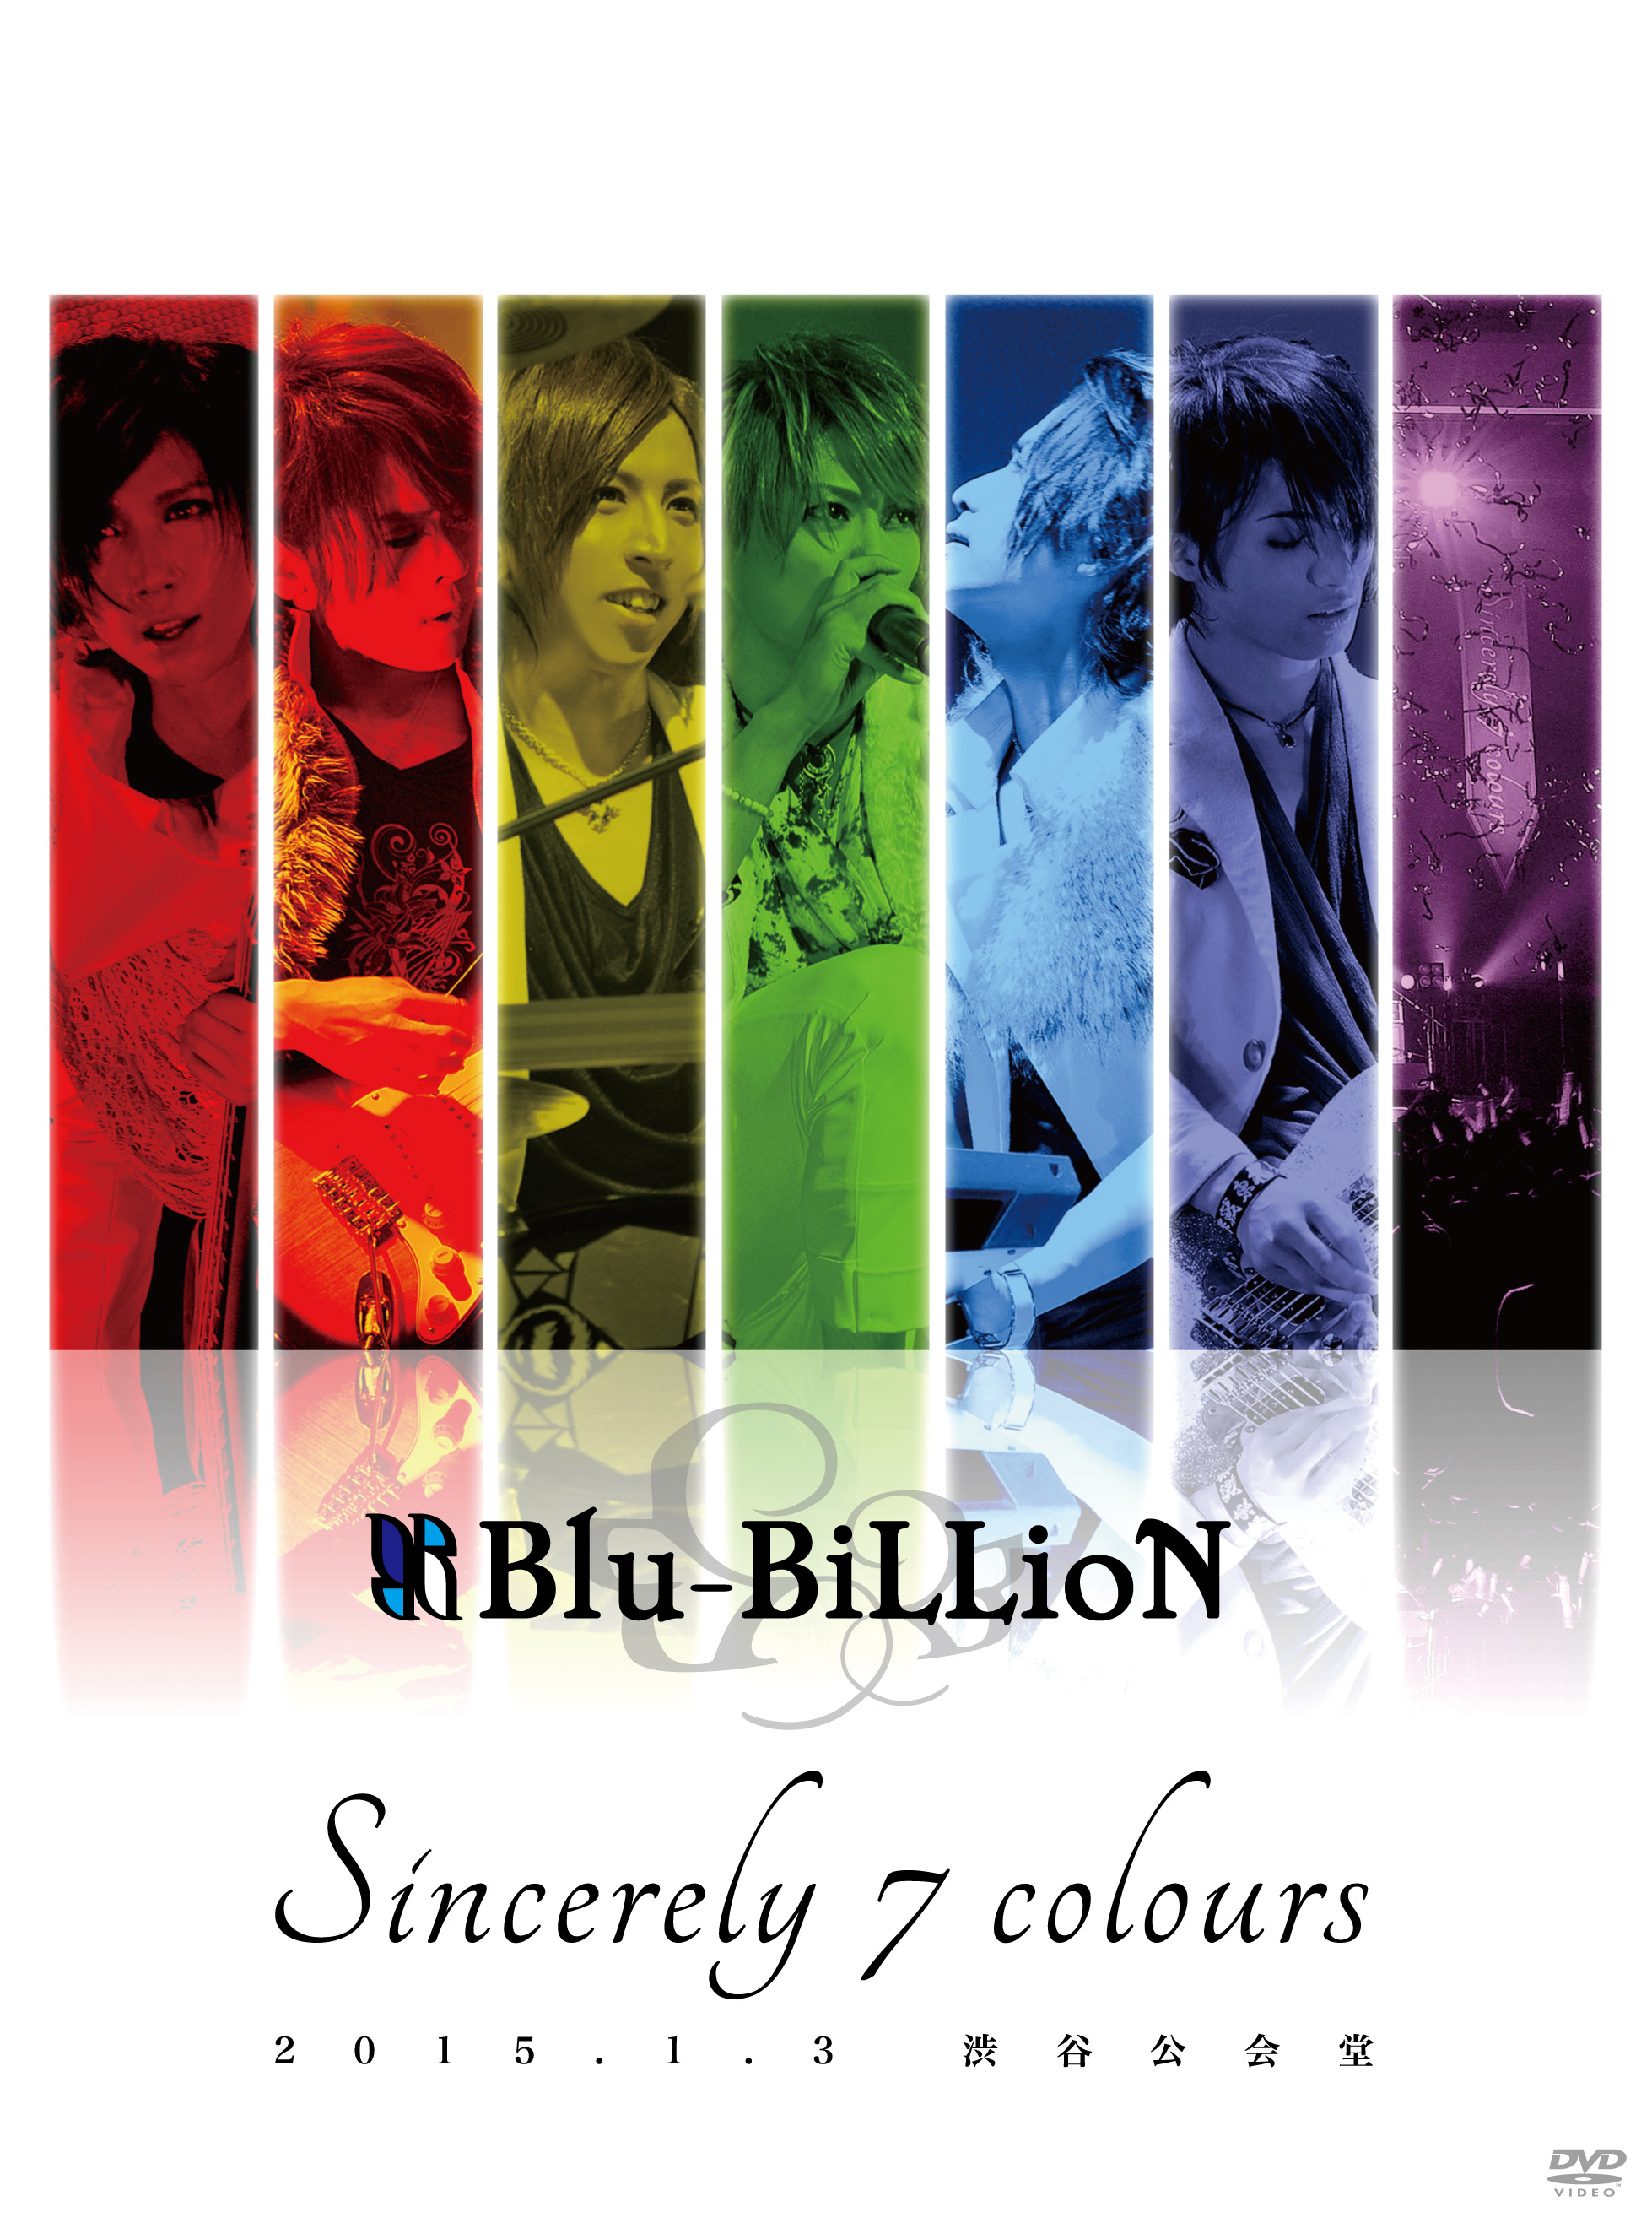 ブルービリオン の DVD 「Sincerely 7 colours」2015.1.3 渋谷公会堂【初回限定Special Edition】